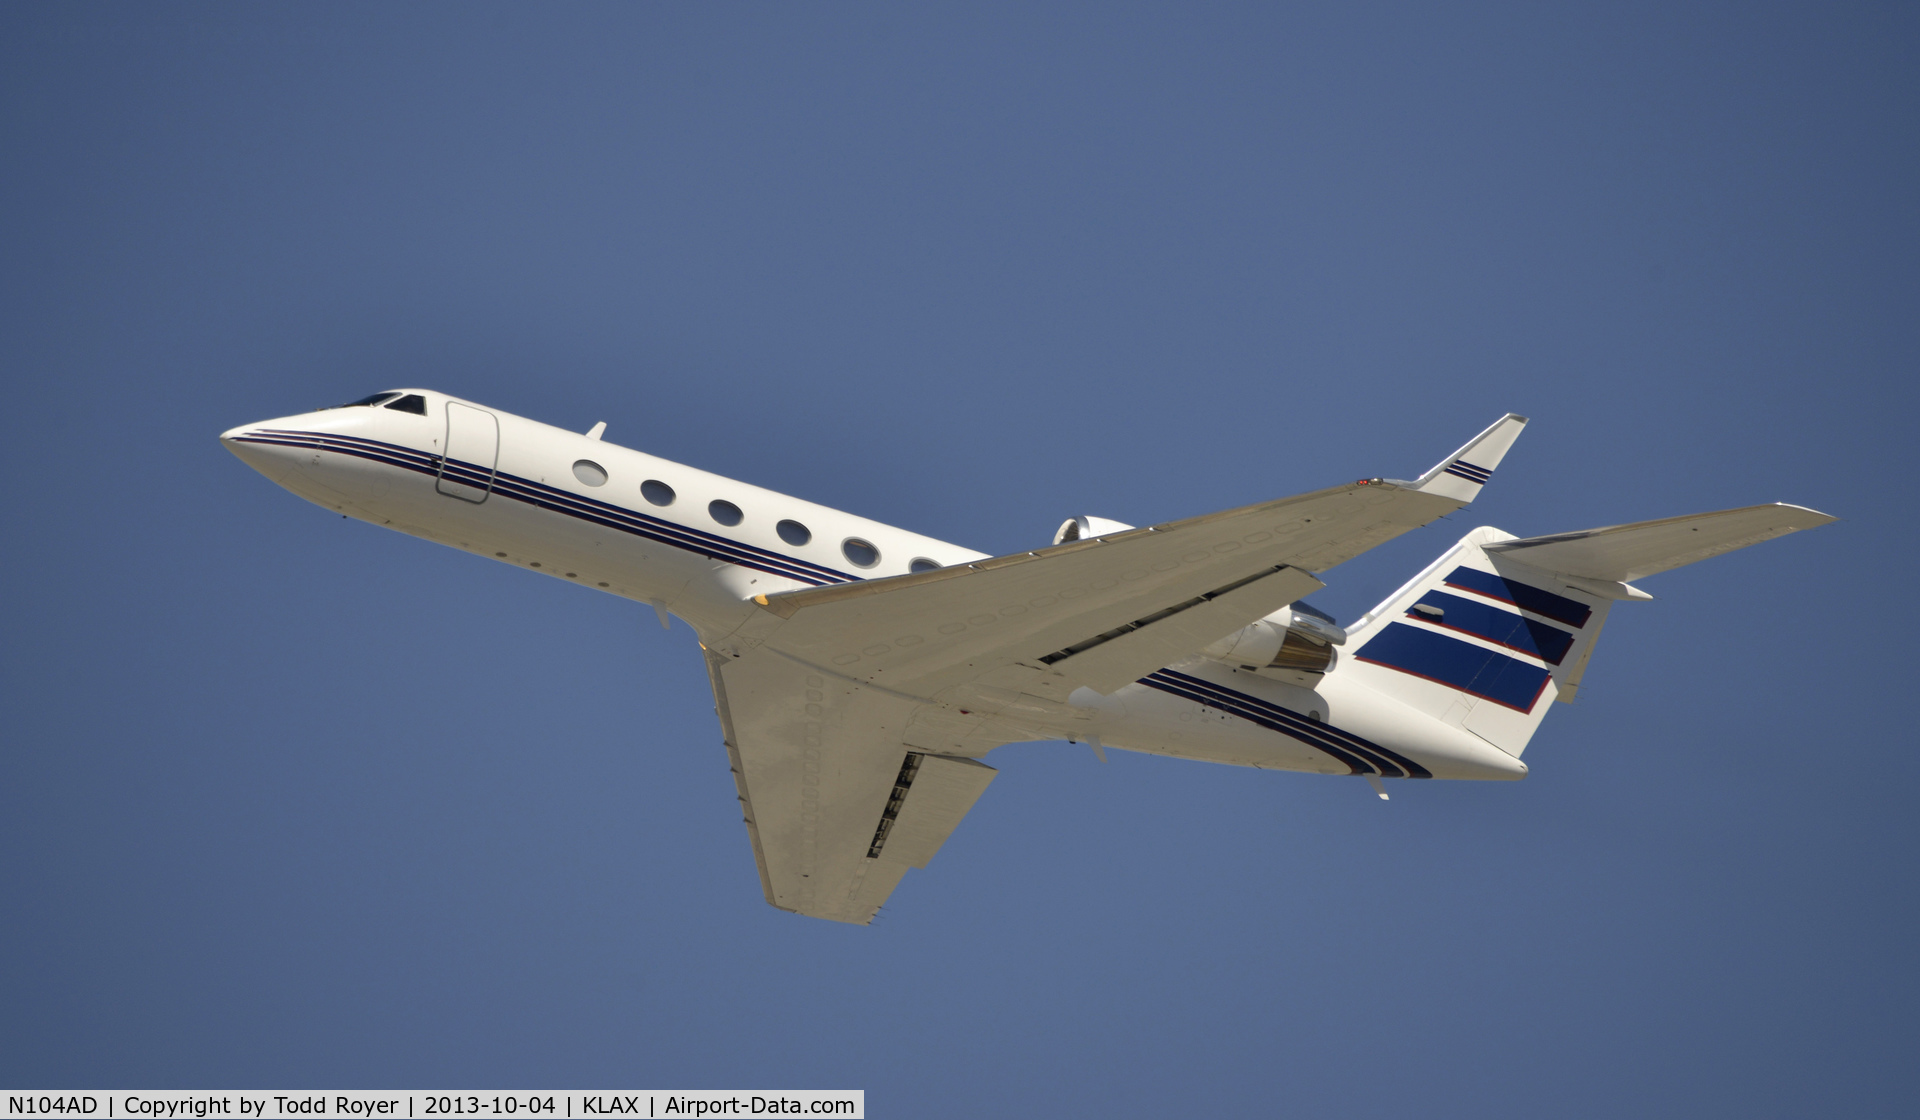 N104AD, 2000 Gulfstream Aerospace G-IV C/N 1406, Departing LAX